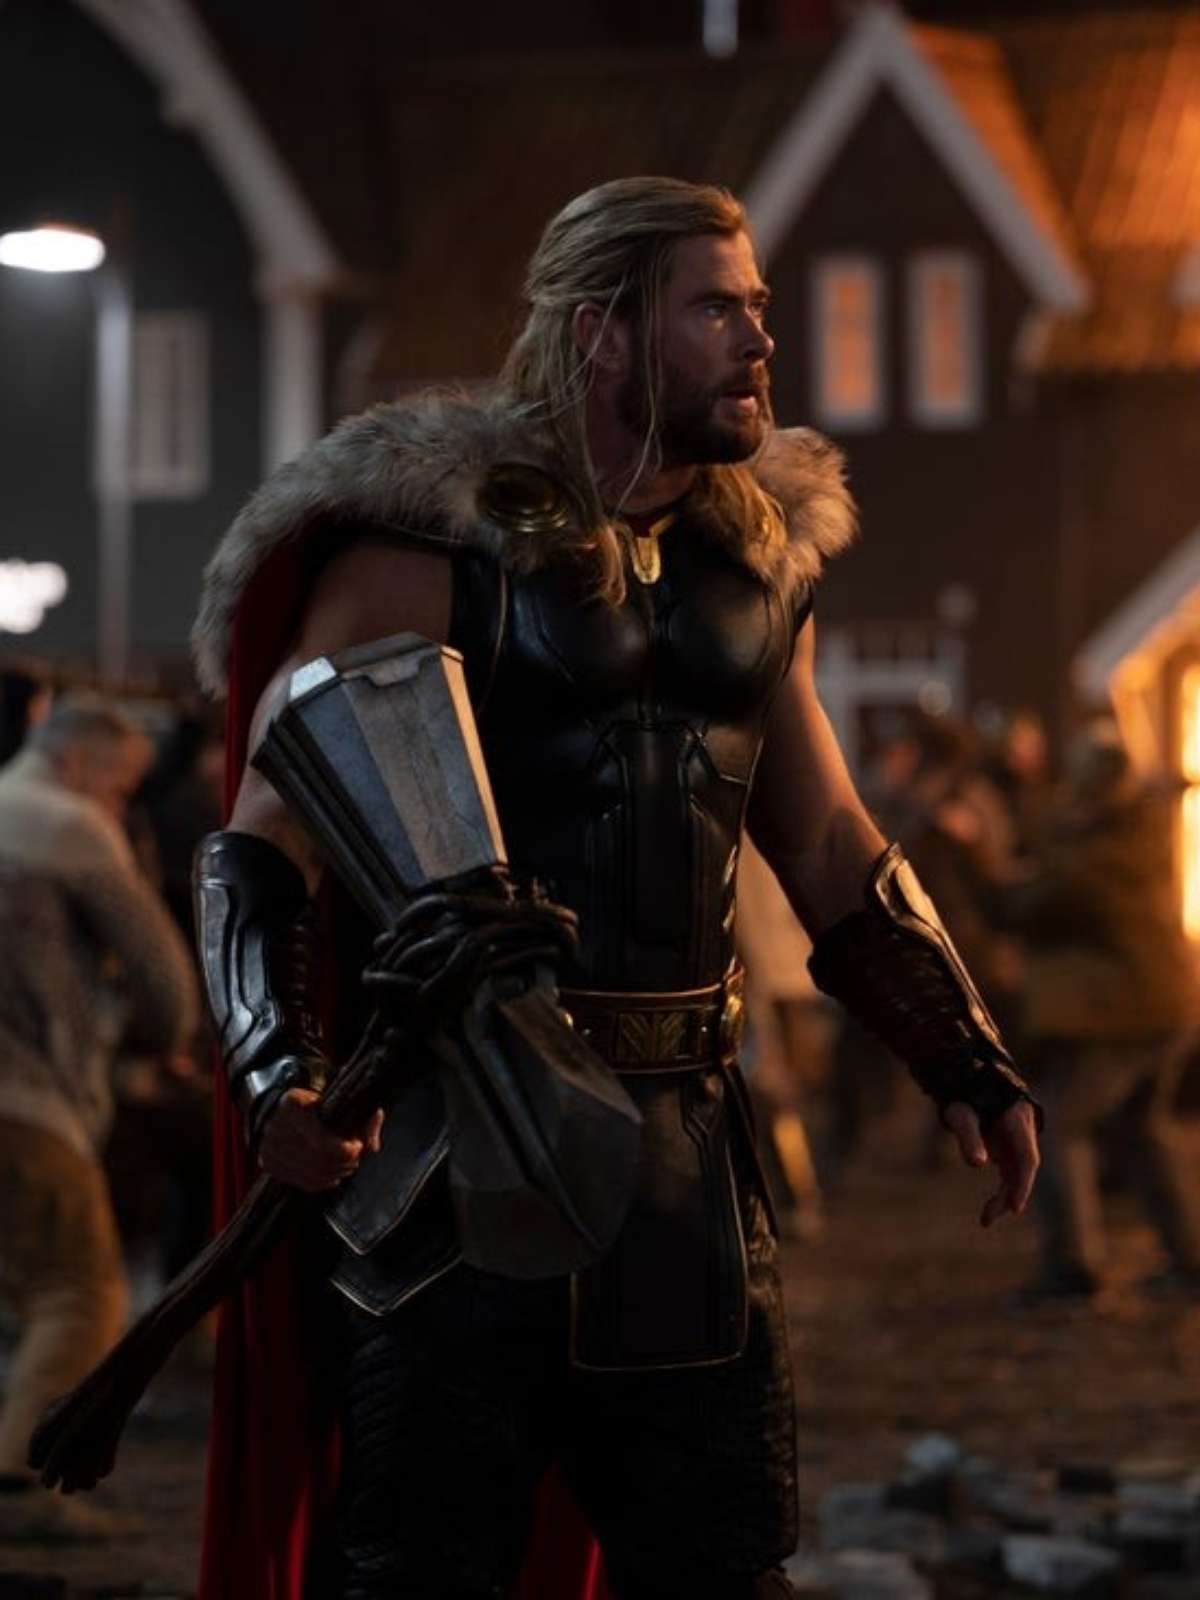 Chris Hemsworth afirma que não quer interpretar Thor até o